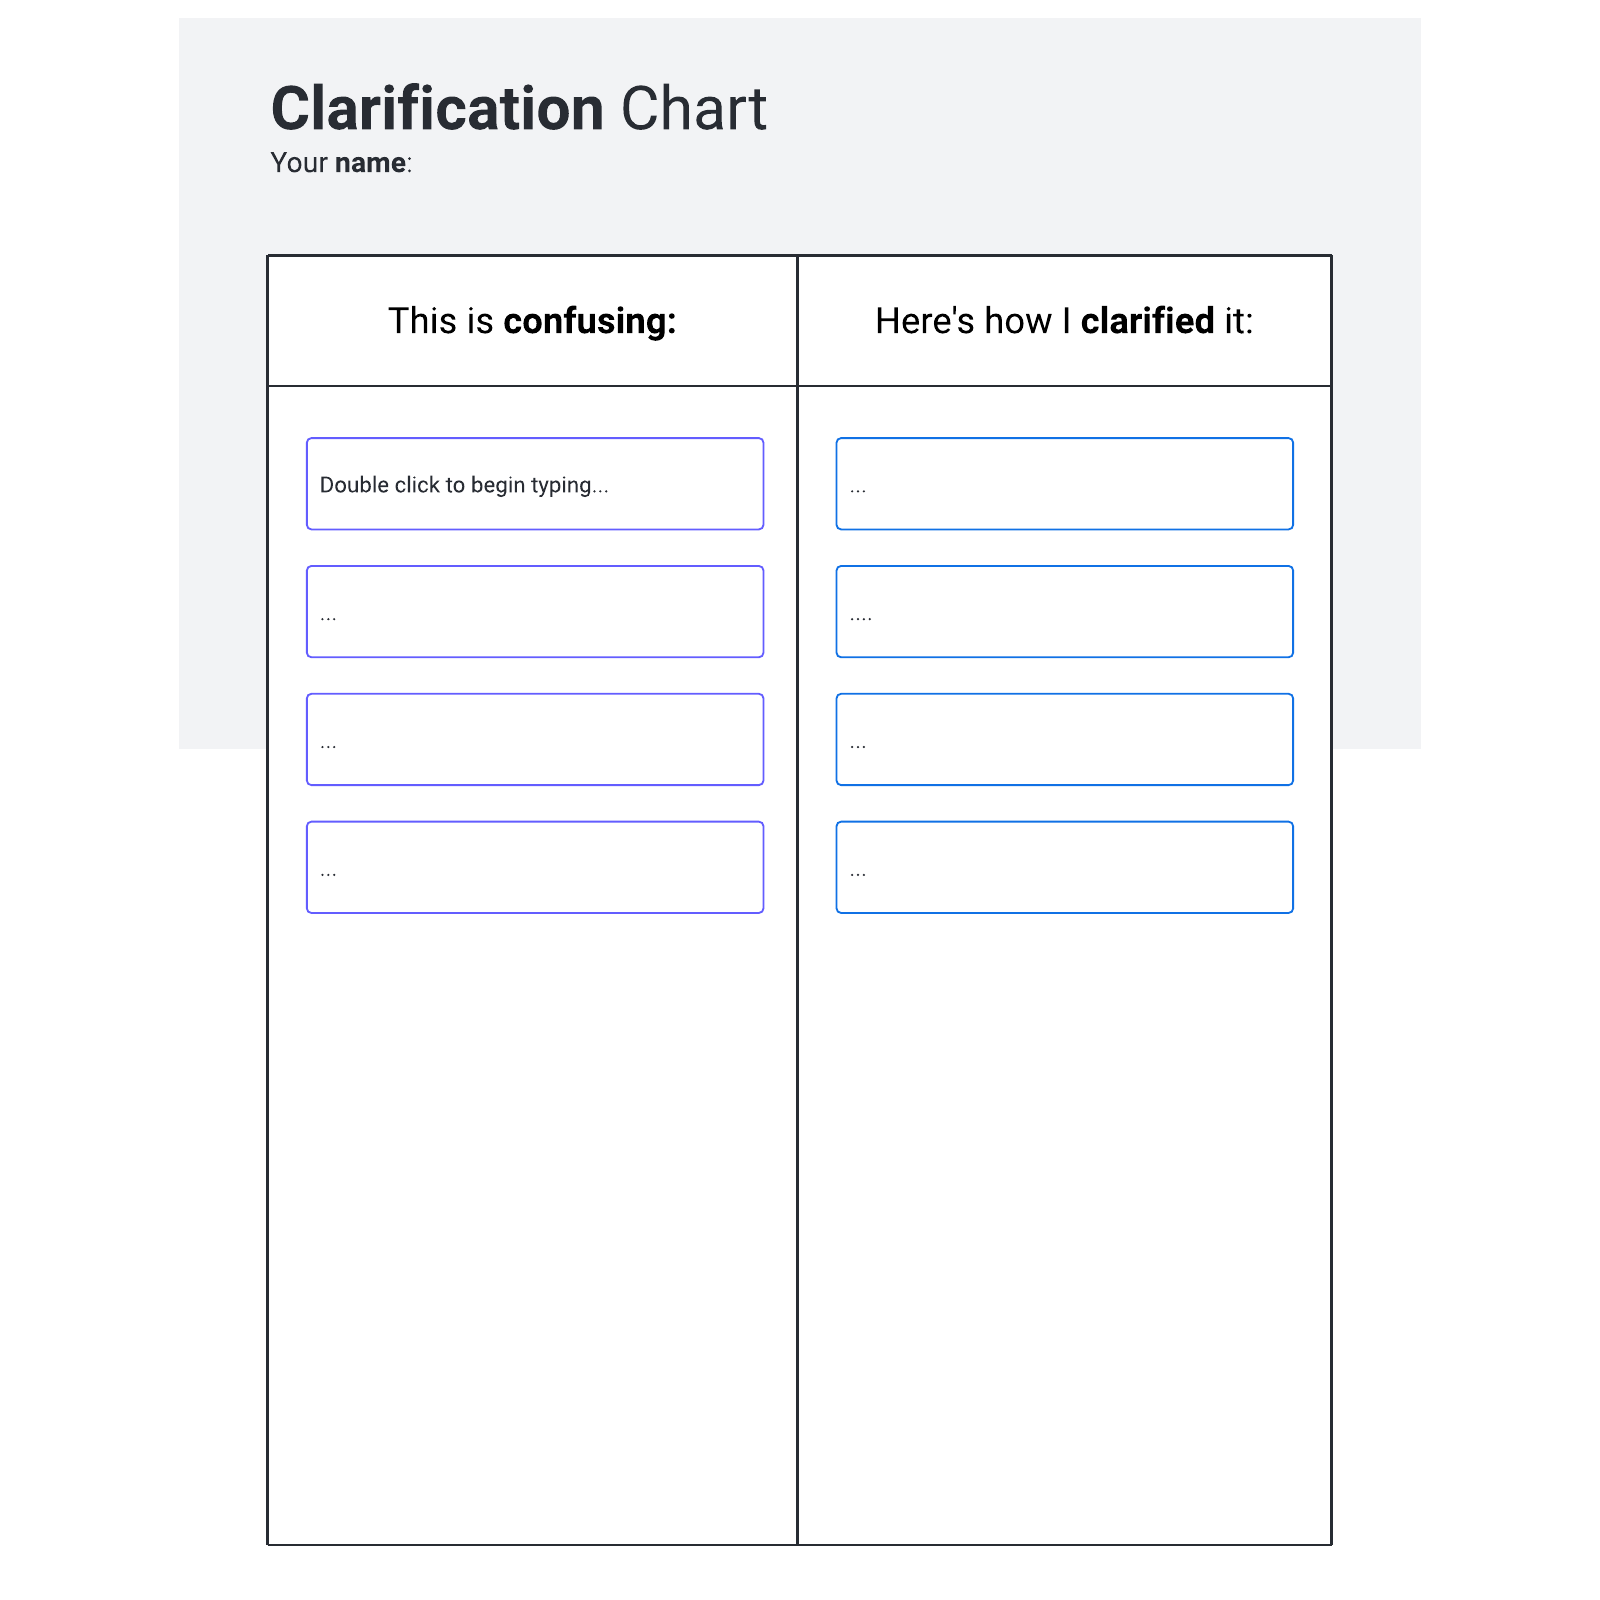 Clarification chart example